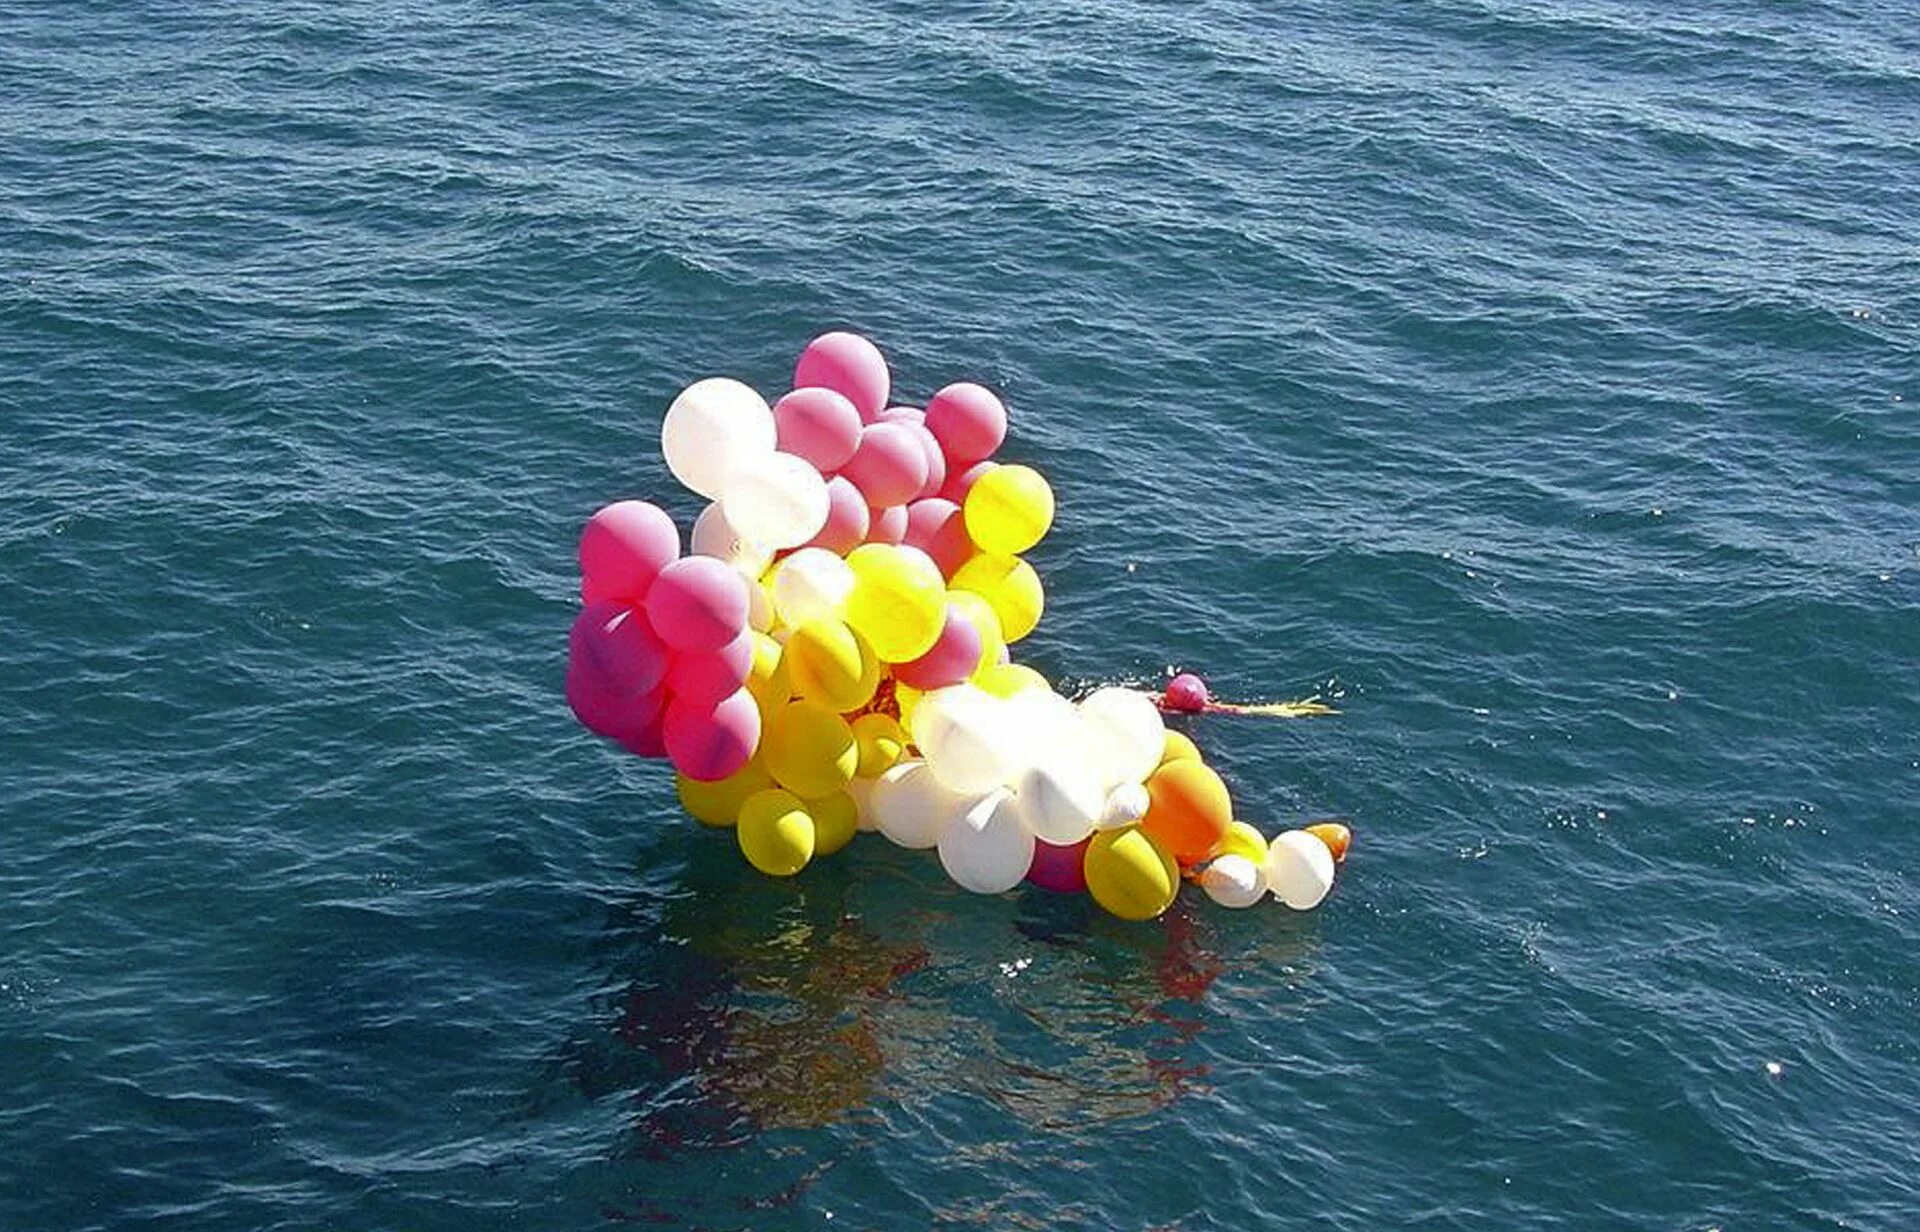 Воздушный шар увлекаемый бурей несся вращаясь. Аделир Антонио де Карли. Воздушные шары в океане. Возд шары в океане. Священник на воздушных шариках.